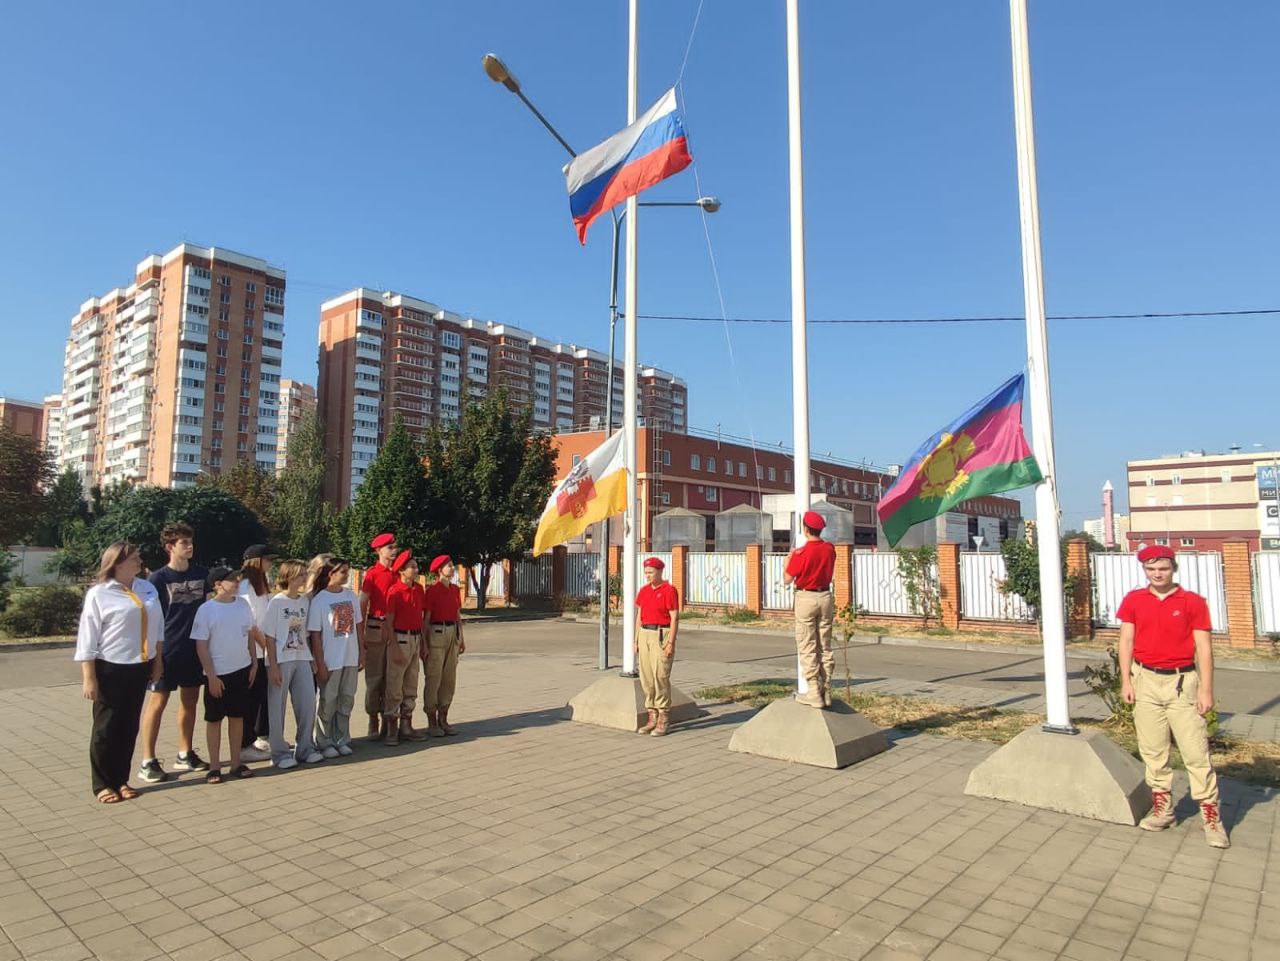 22 августа- День Государственного флага Российской Федерации